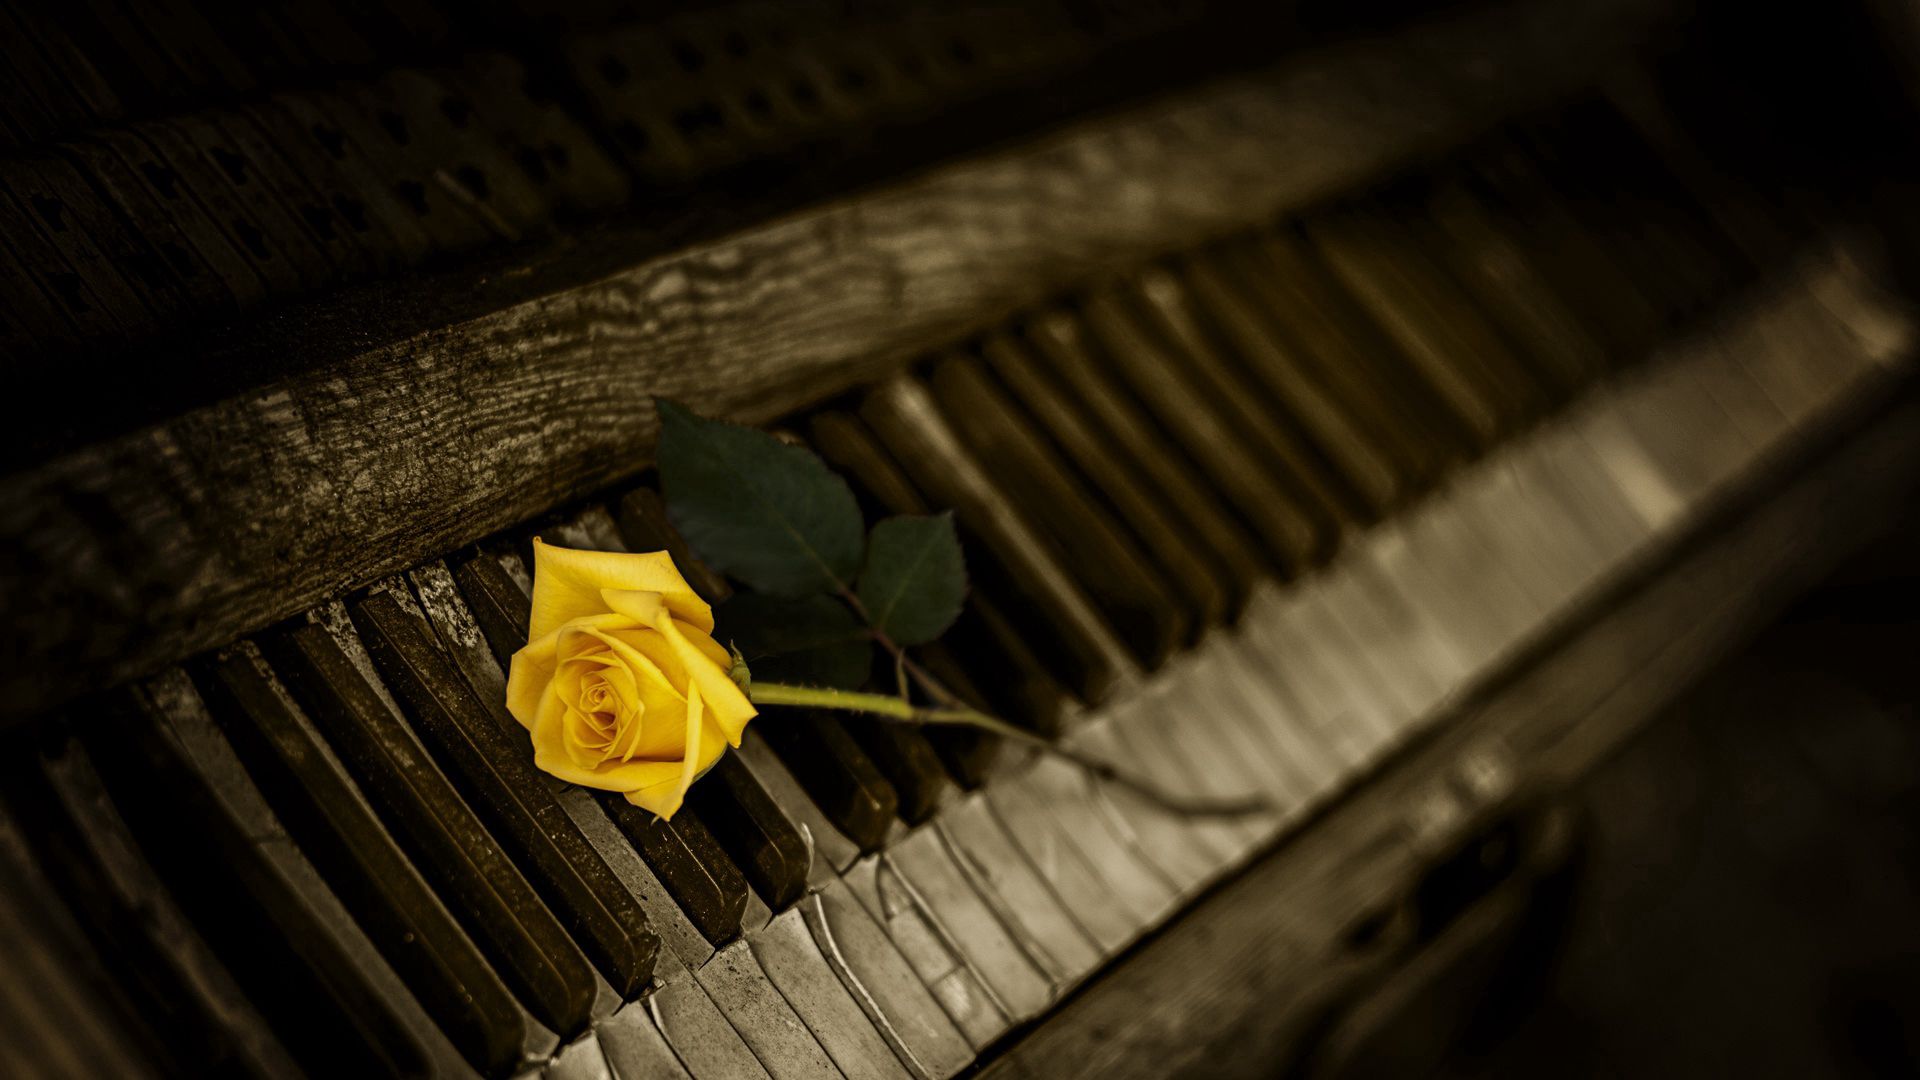 piano, flowers, rose flower, rose, keys 8K